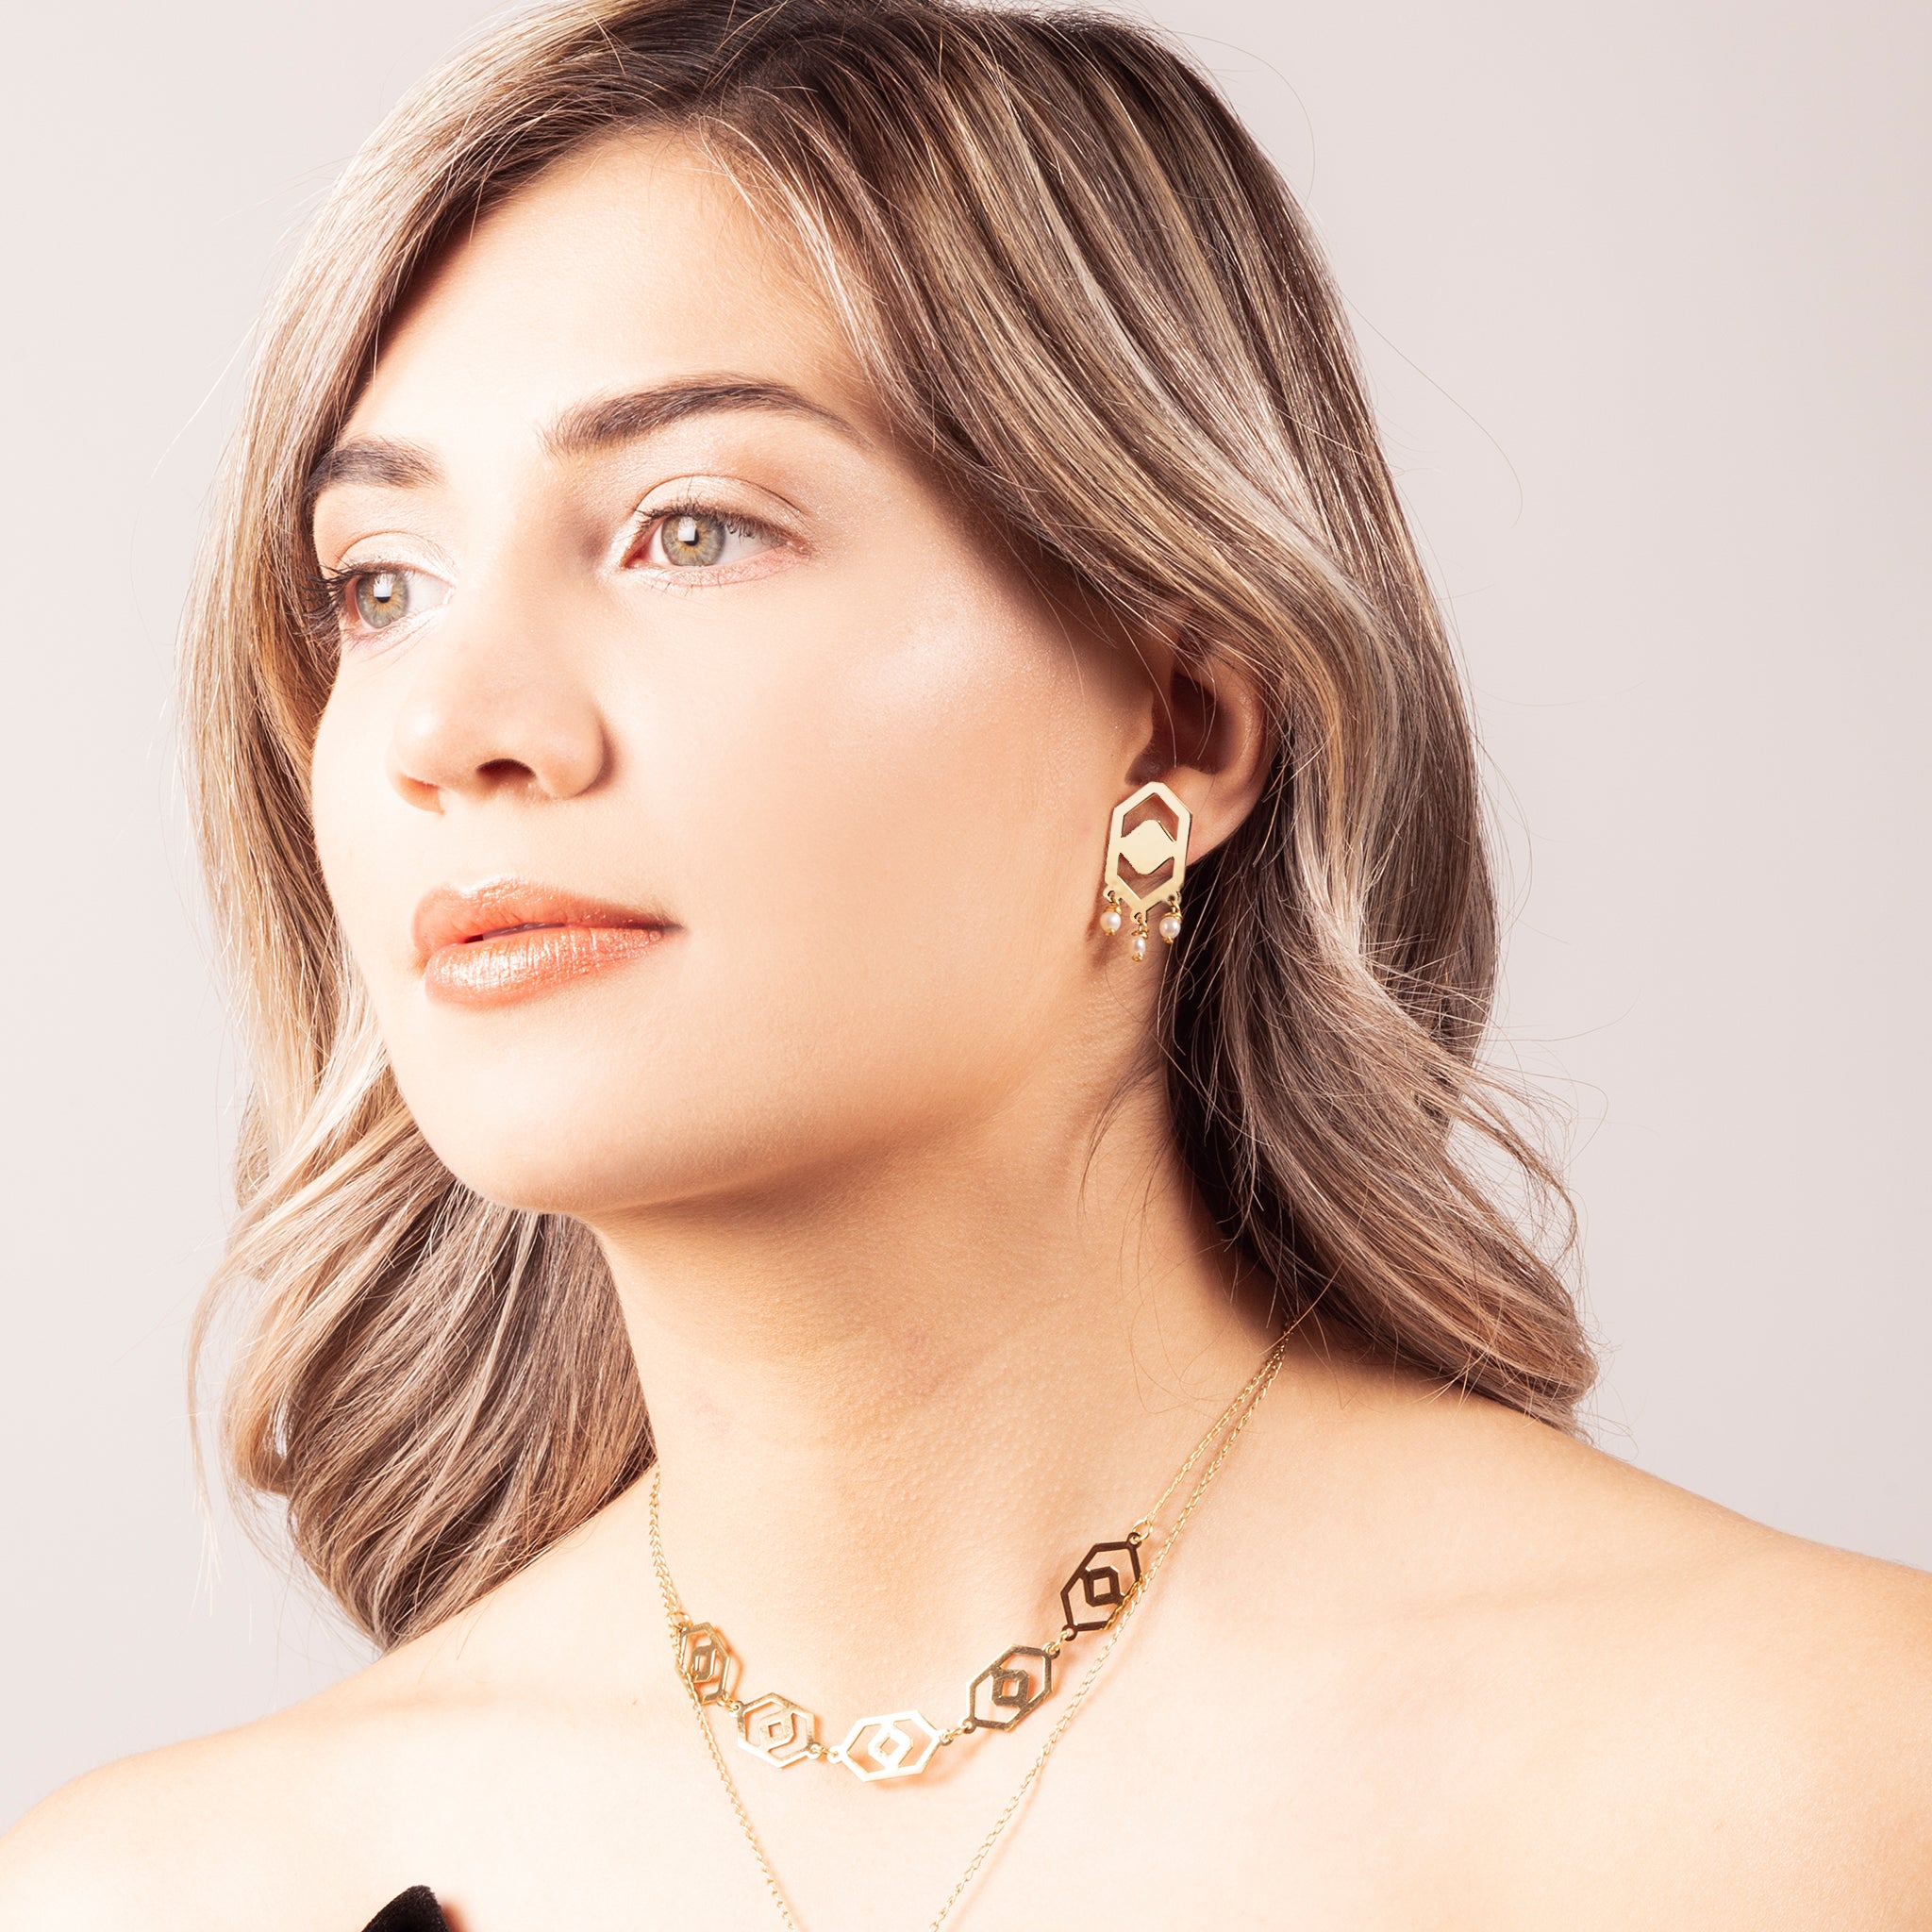 Millié Jewelry - Millié Jewelry - Huipil Earrings - Aretes - Diseño Mexicano - Hecho en México